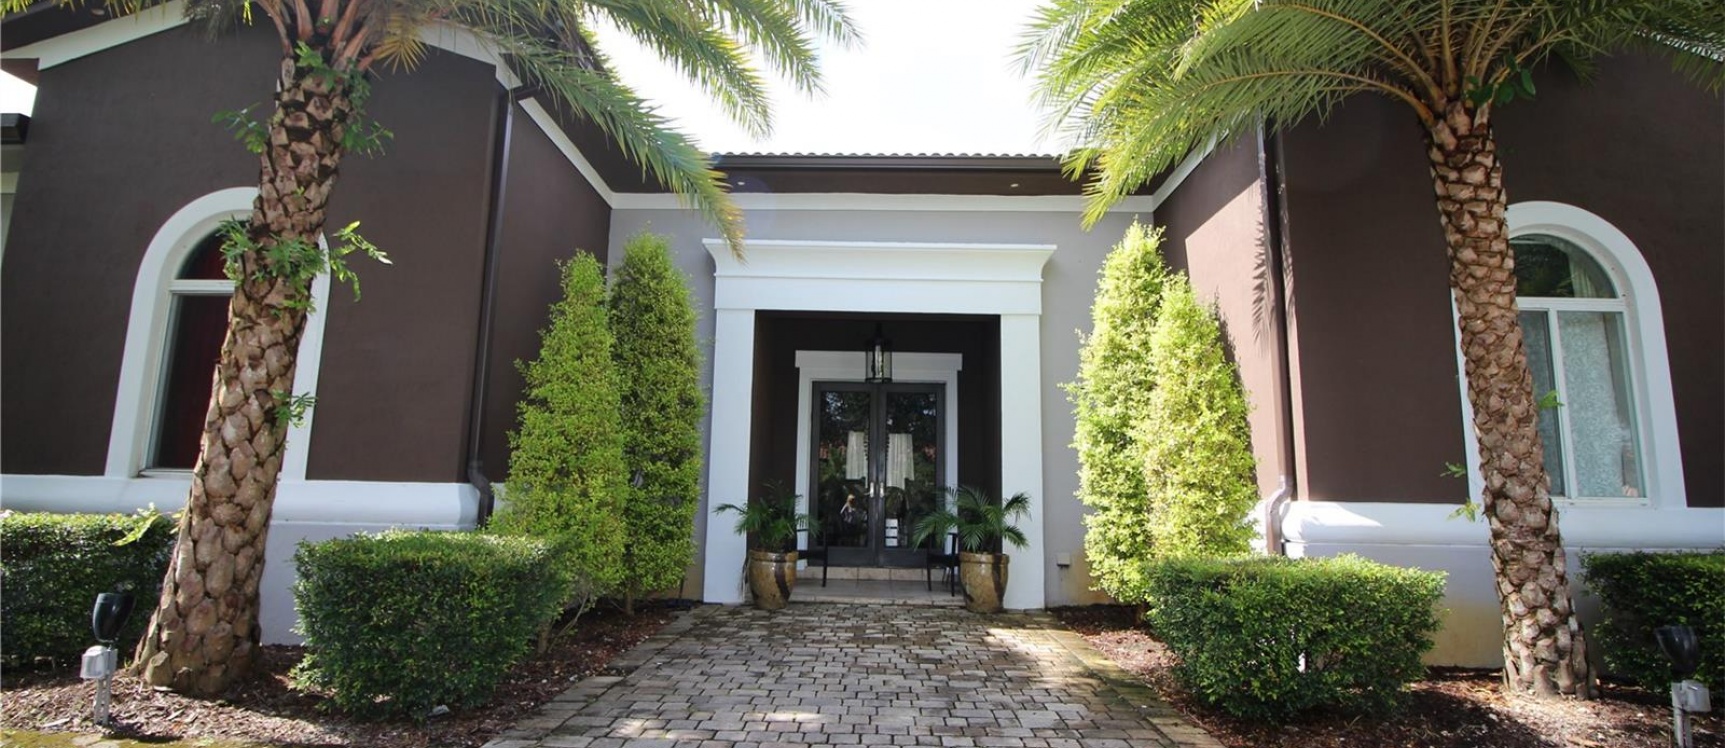 GeoBienes - Casa a la venta en DORAL, Vanderbilt Park - Plusvalia Guayaquil Casas de venta y alquiler Inmobiliaria Ecuador